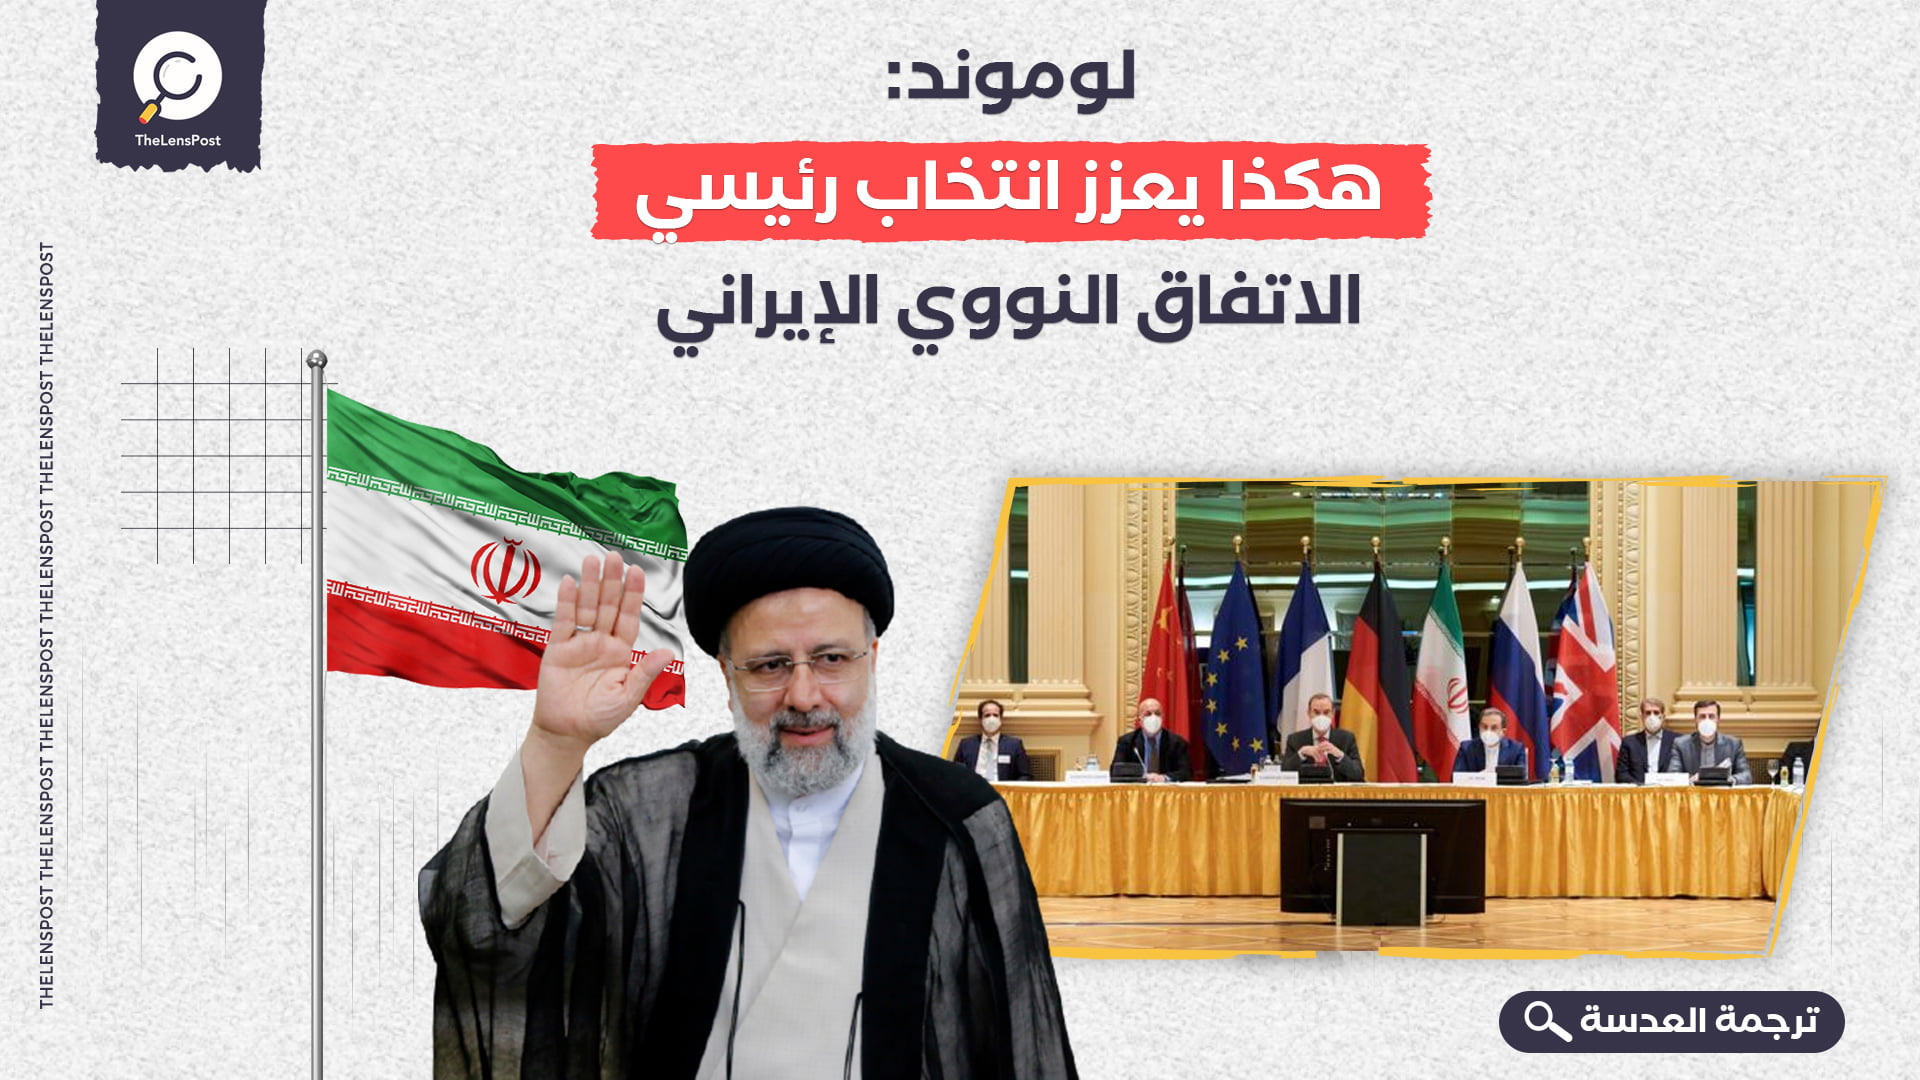 لوموند: هكذا يعزز انتخاب رئيسي الاتفاق النووي الإيراني